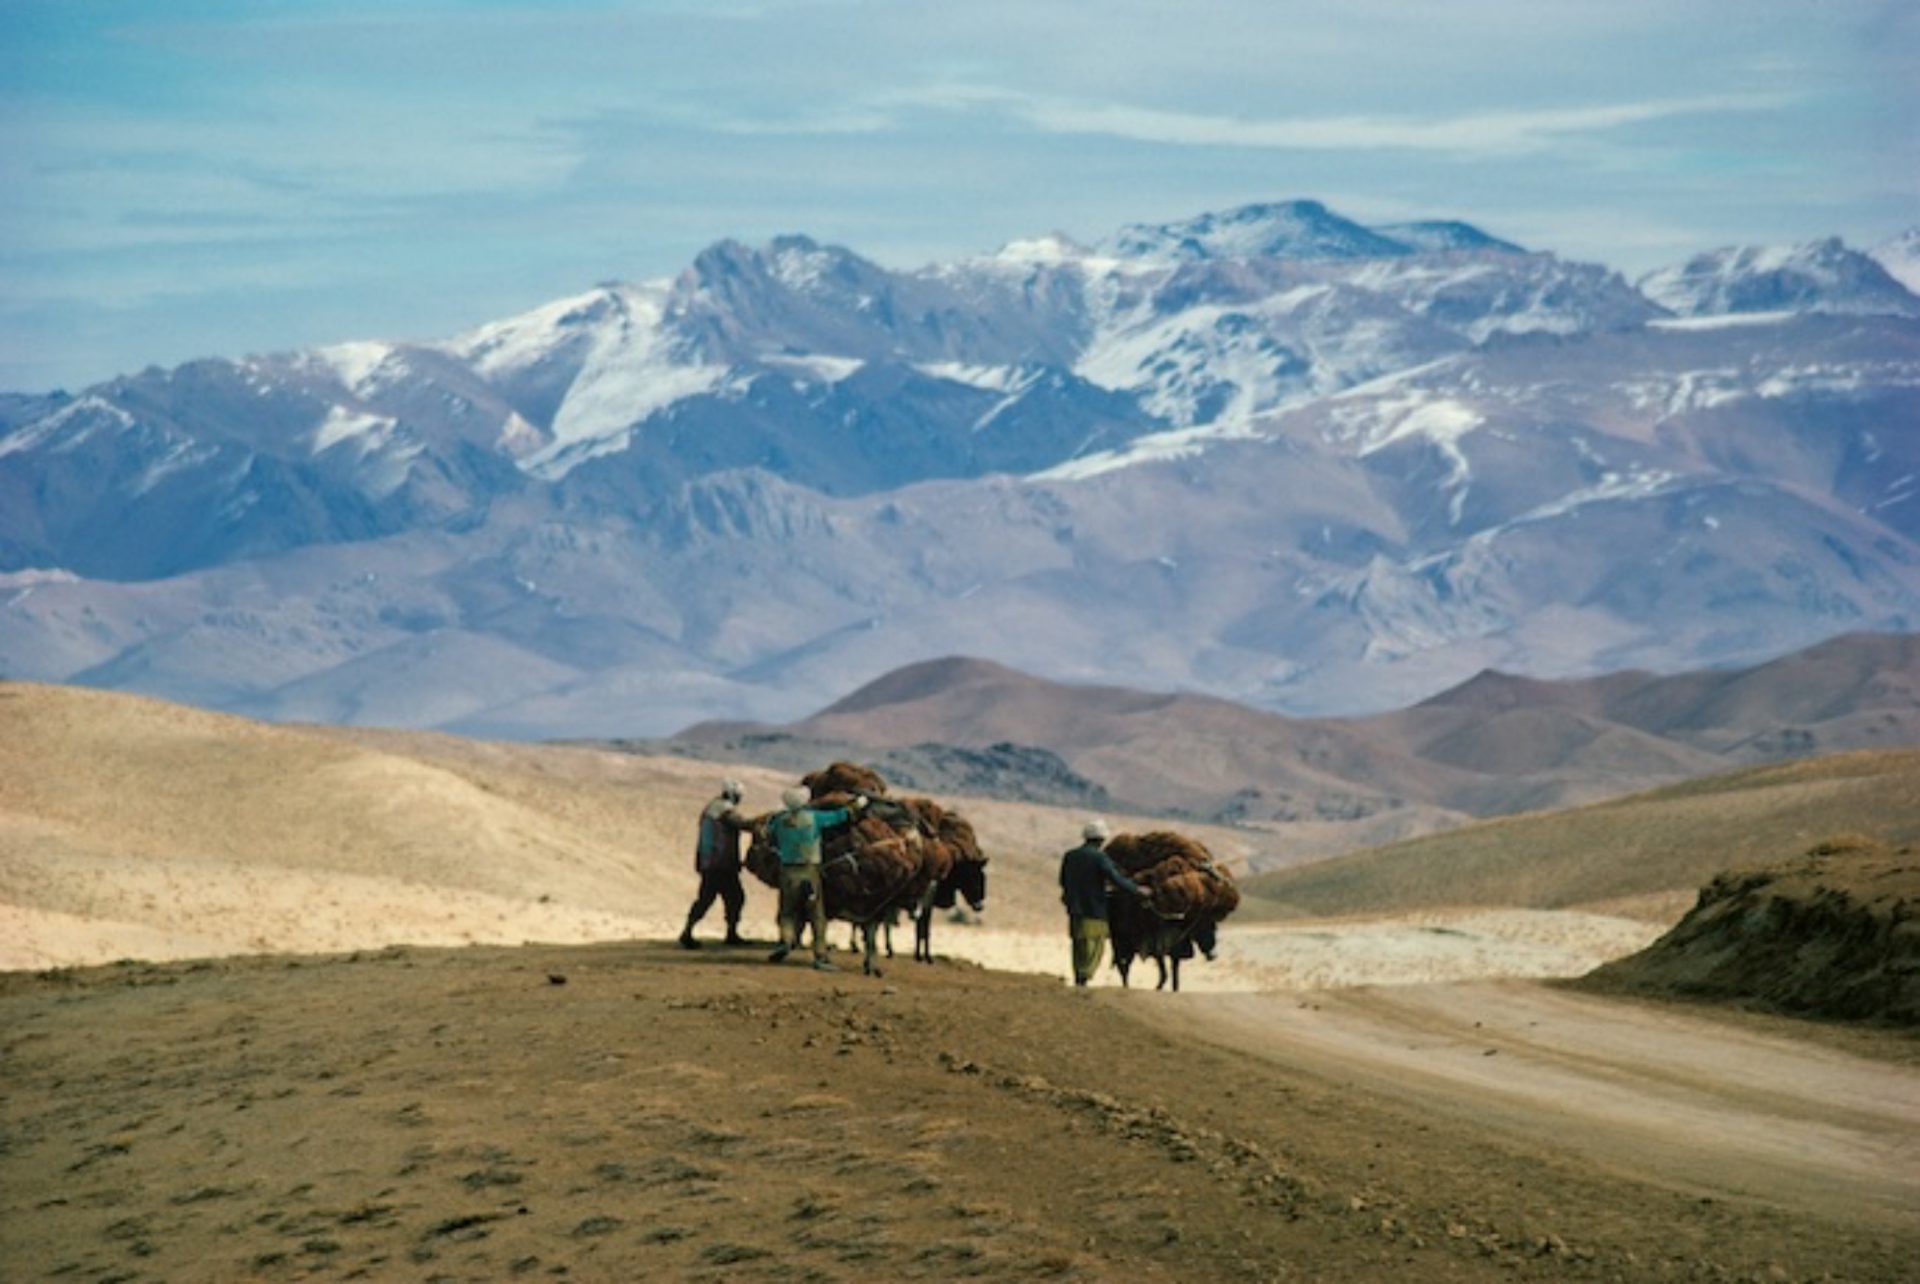 遊牧民と牛が荒野を行く姿。篠山紀信「シルクロード」写真展の写真